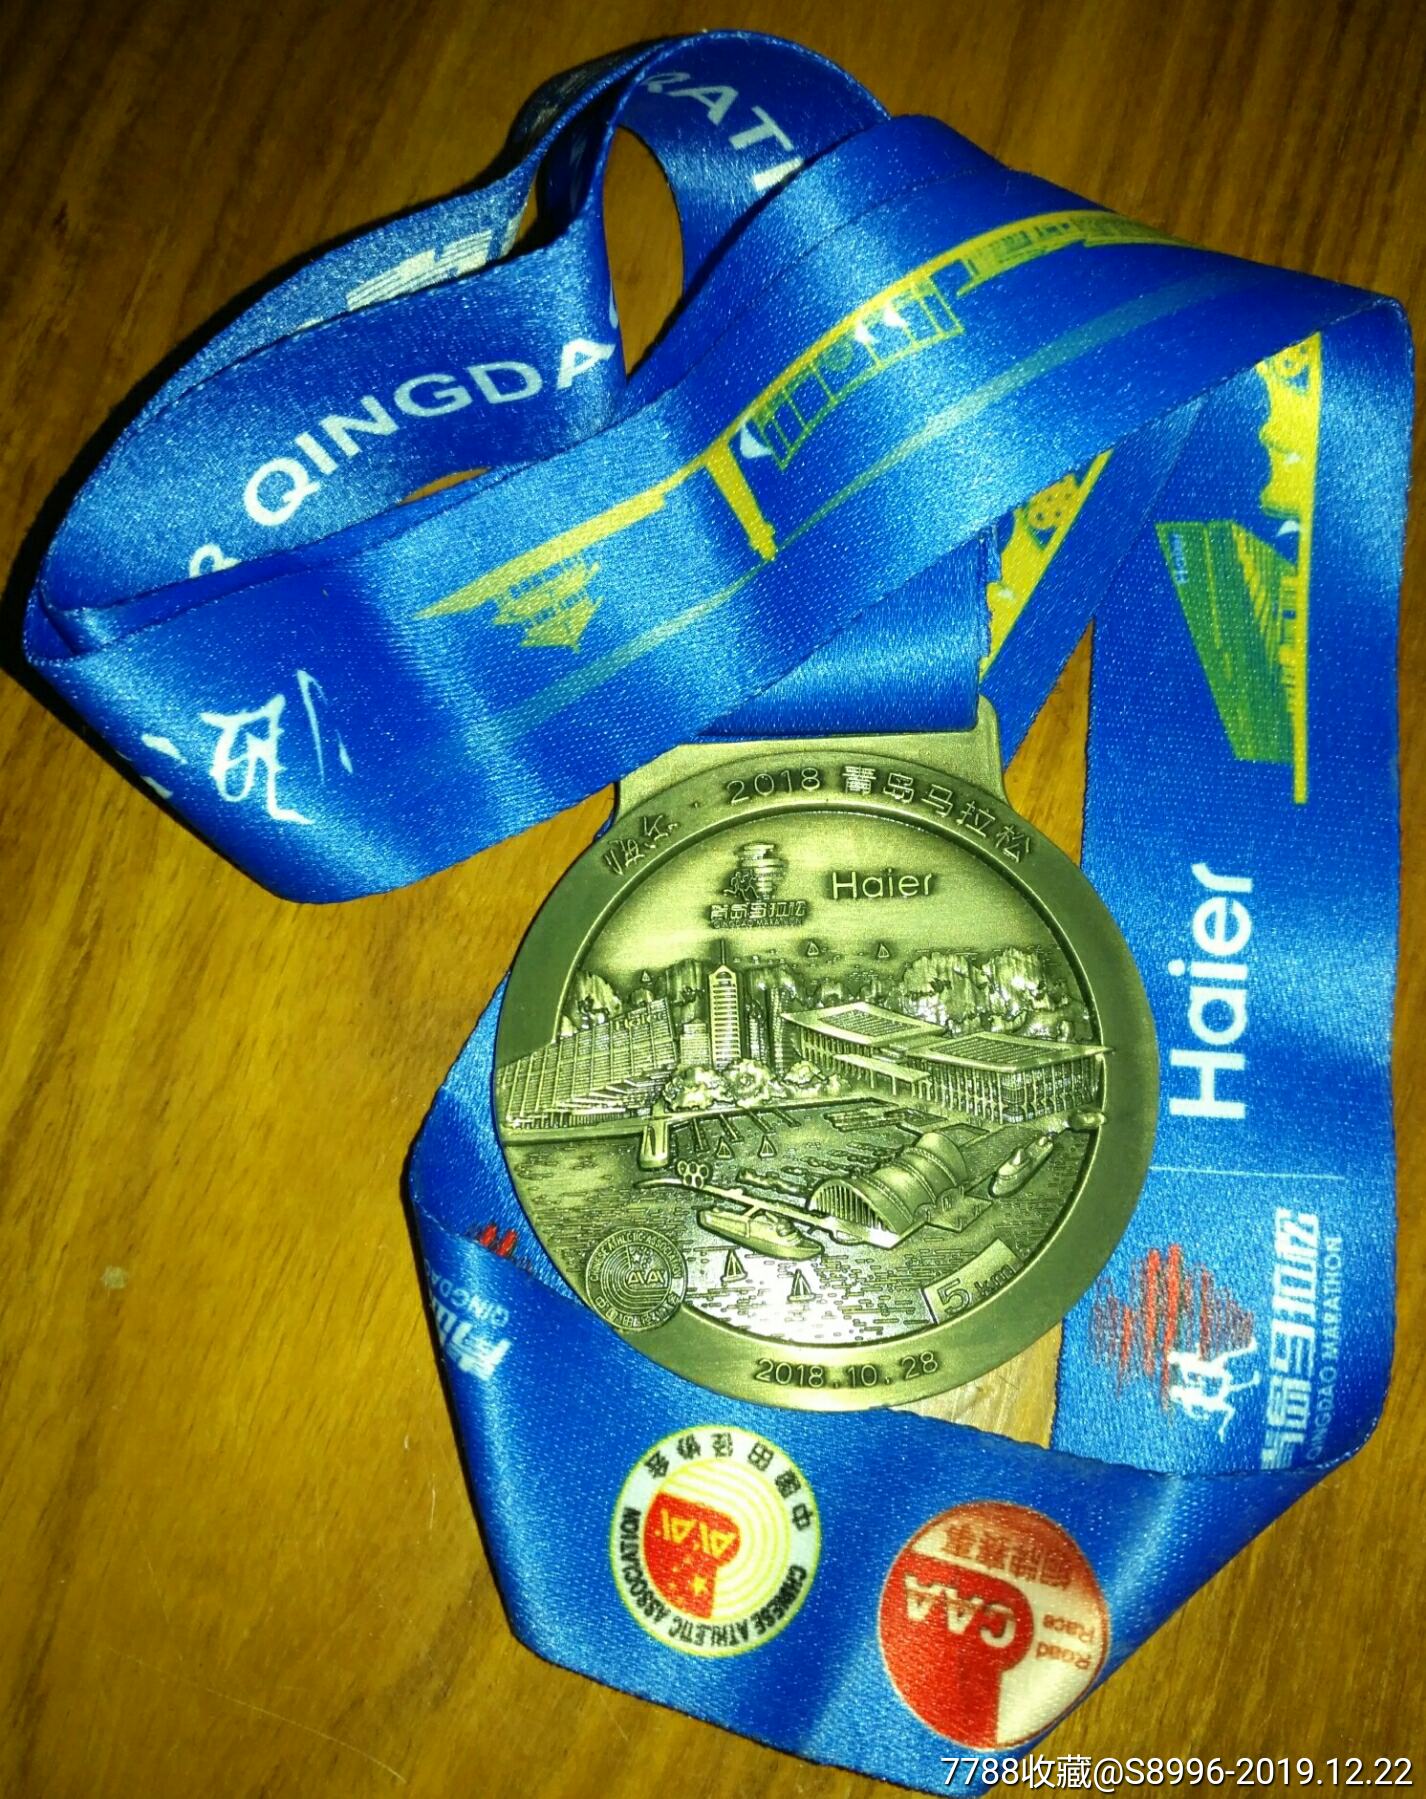 2018青岛马拉松赛奖牌